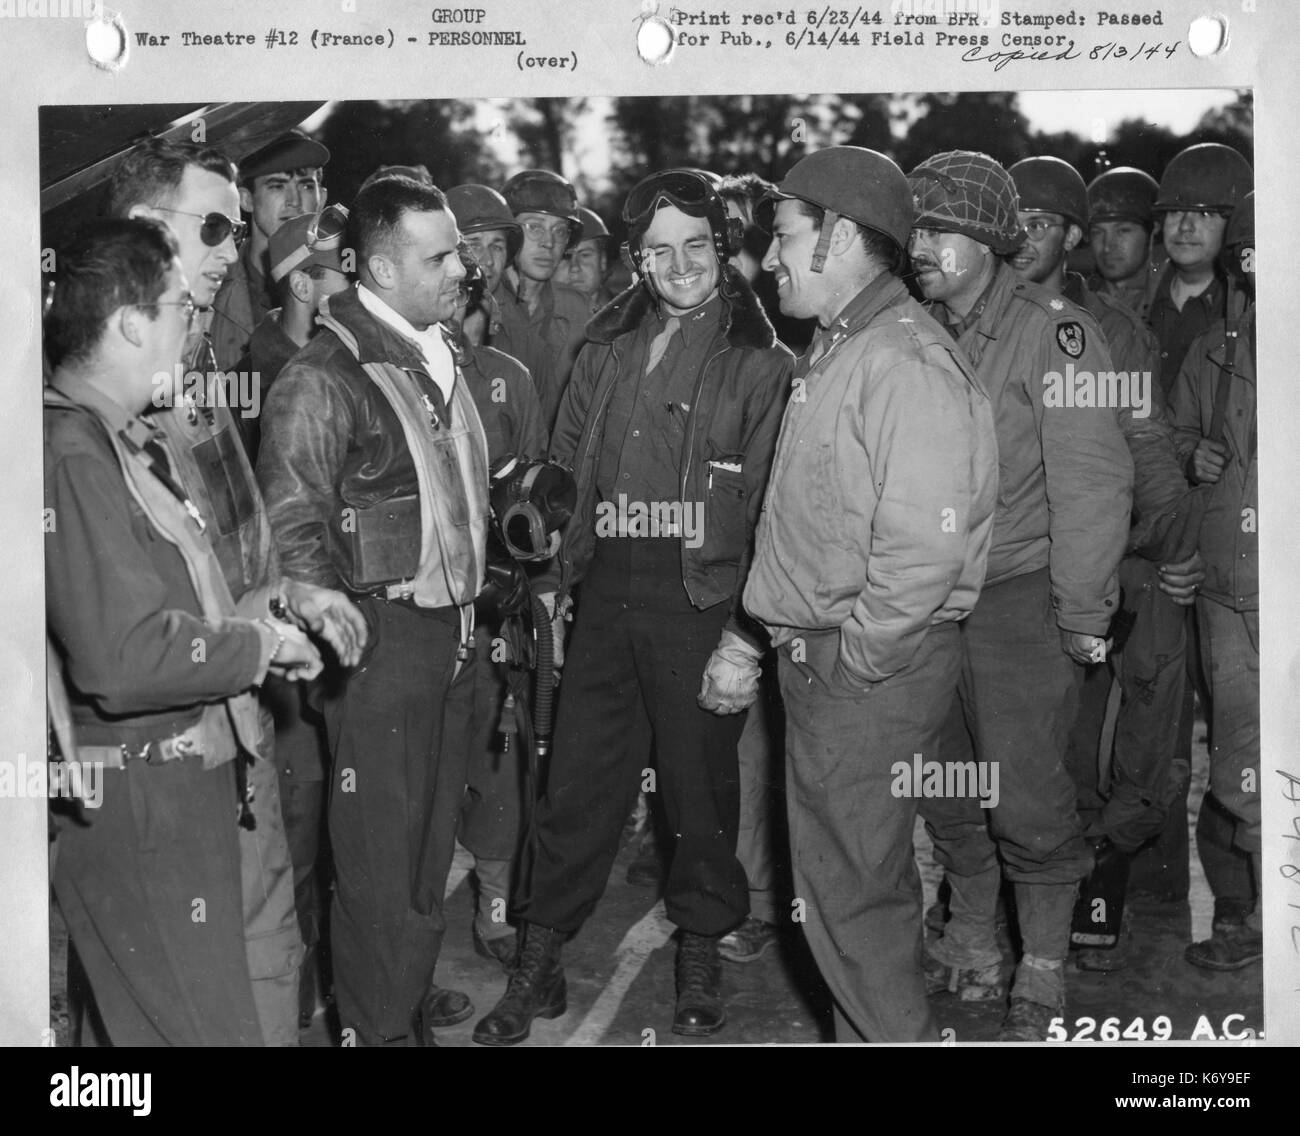 Il Mag. Gen. E.R. Quesada parla di alcuni caccia bombardiere piloti del nono Air Force dopo sbarcarono sulla prima striscia di atterraggio in Francia settentrionale costruita da 9AF Aviation ingegneri dopo il D-Day. Francia, 6/1944. Foto Stock